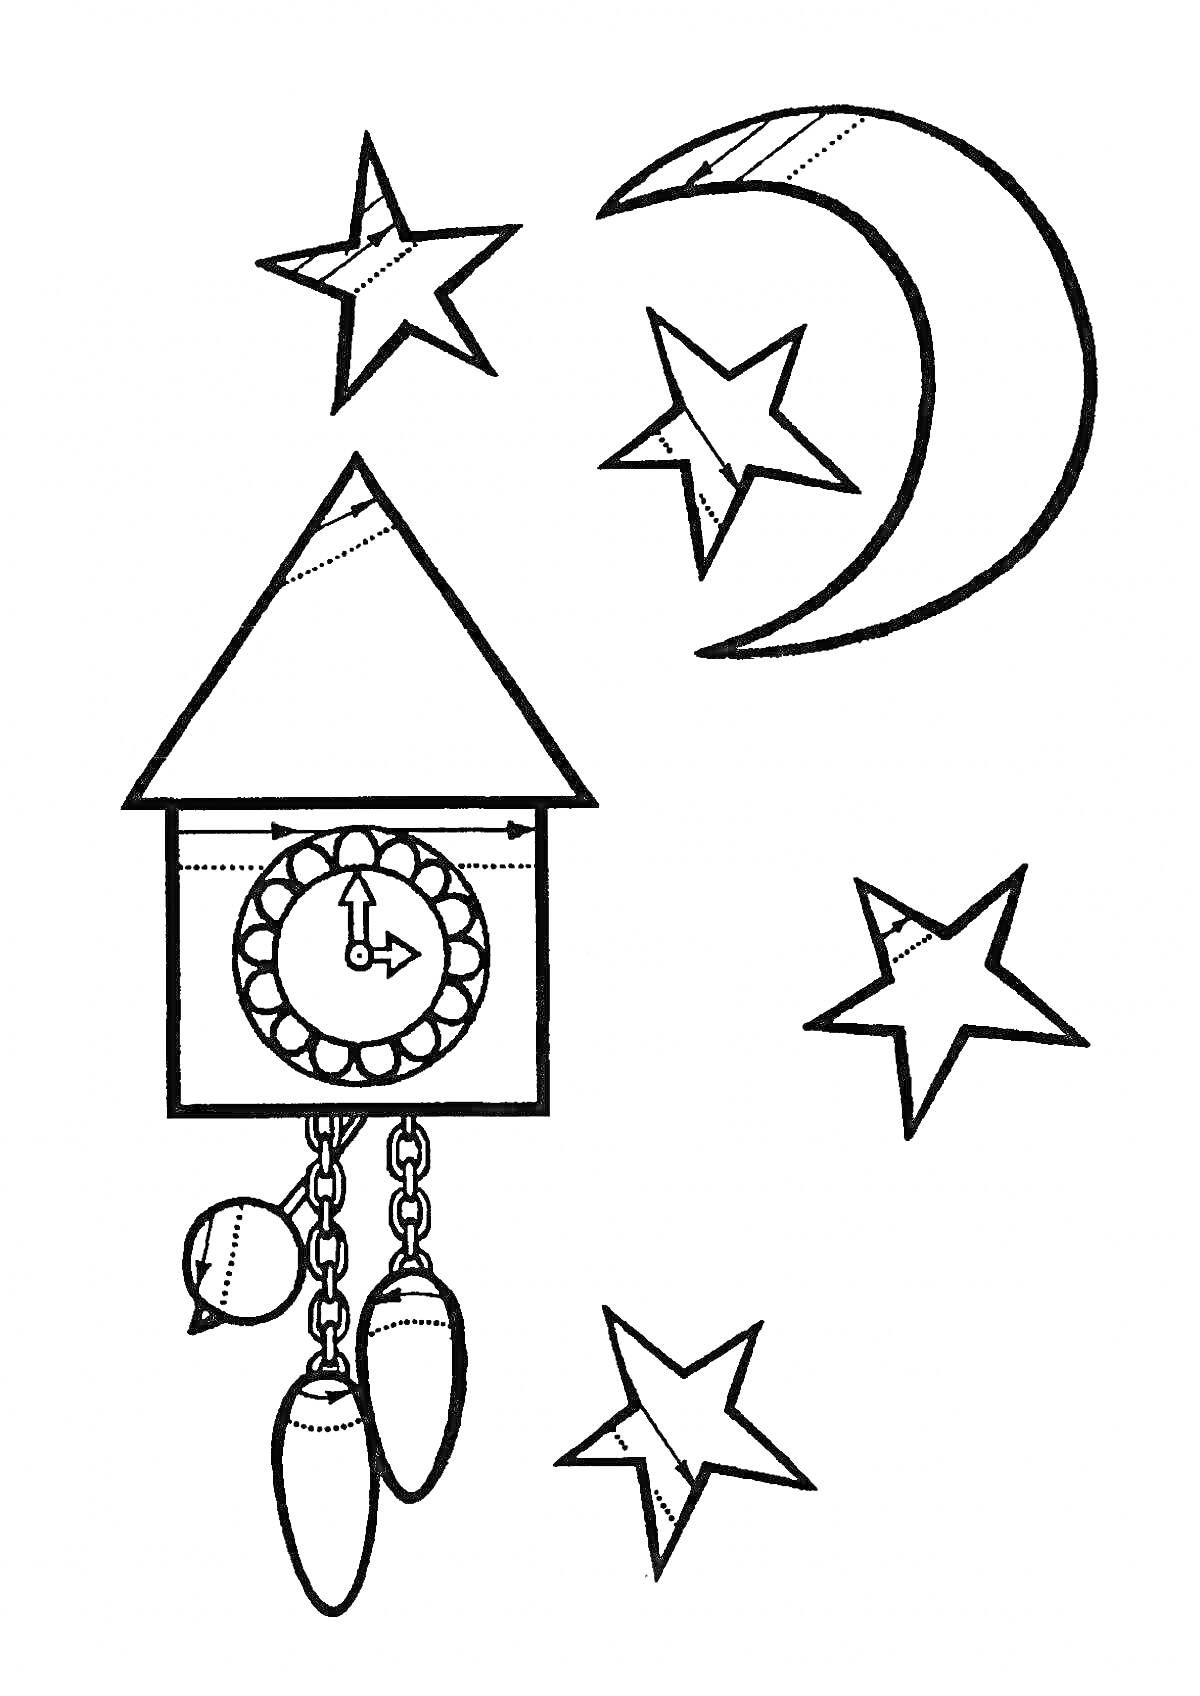 Раскраска Кукушечные часы с маятником и звездочками на фоне полумесяца